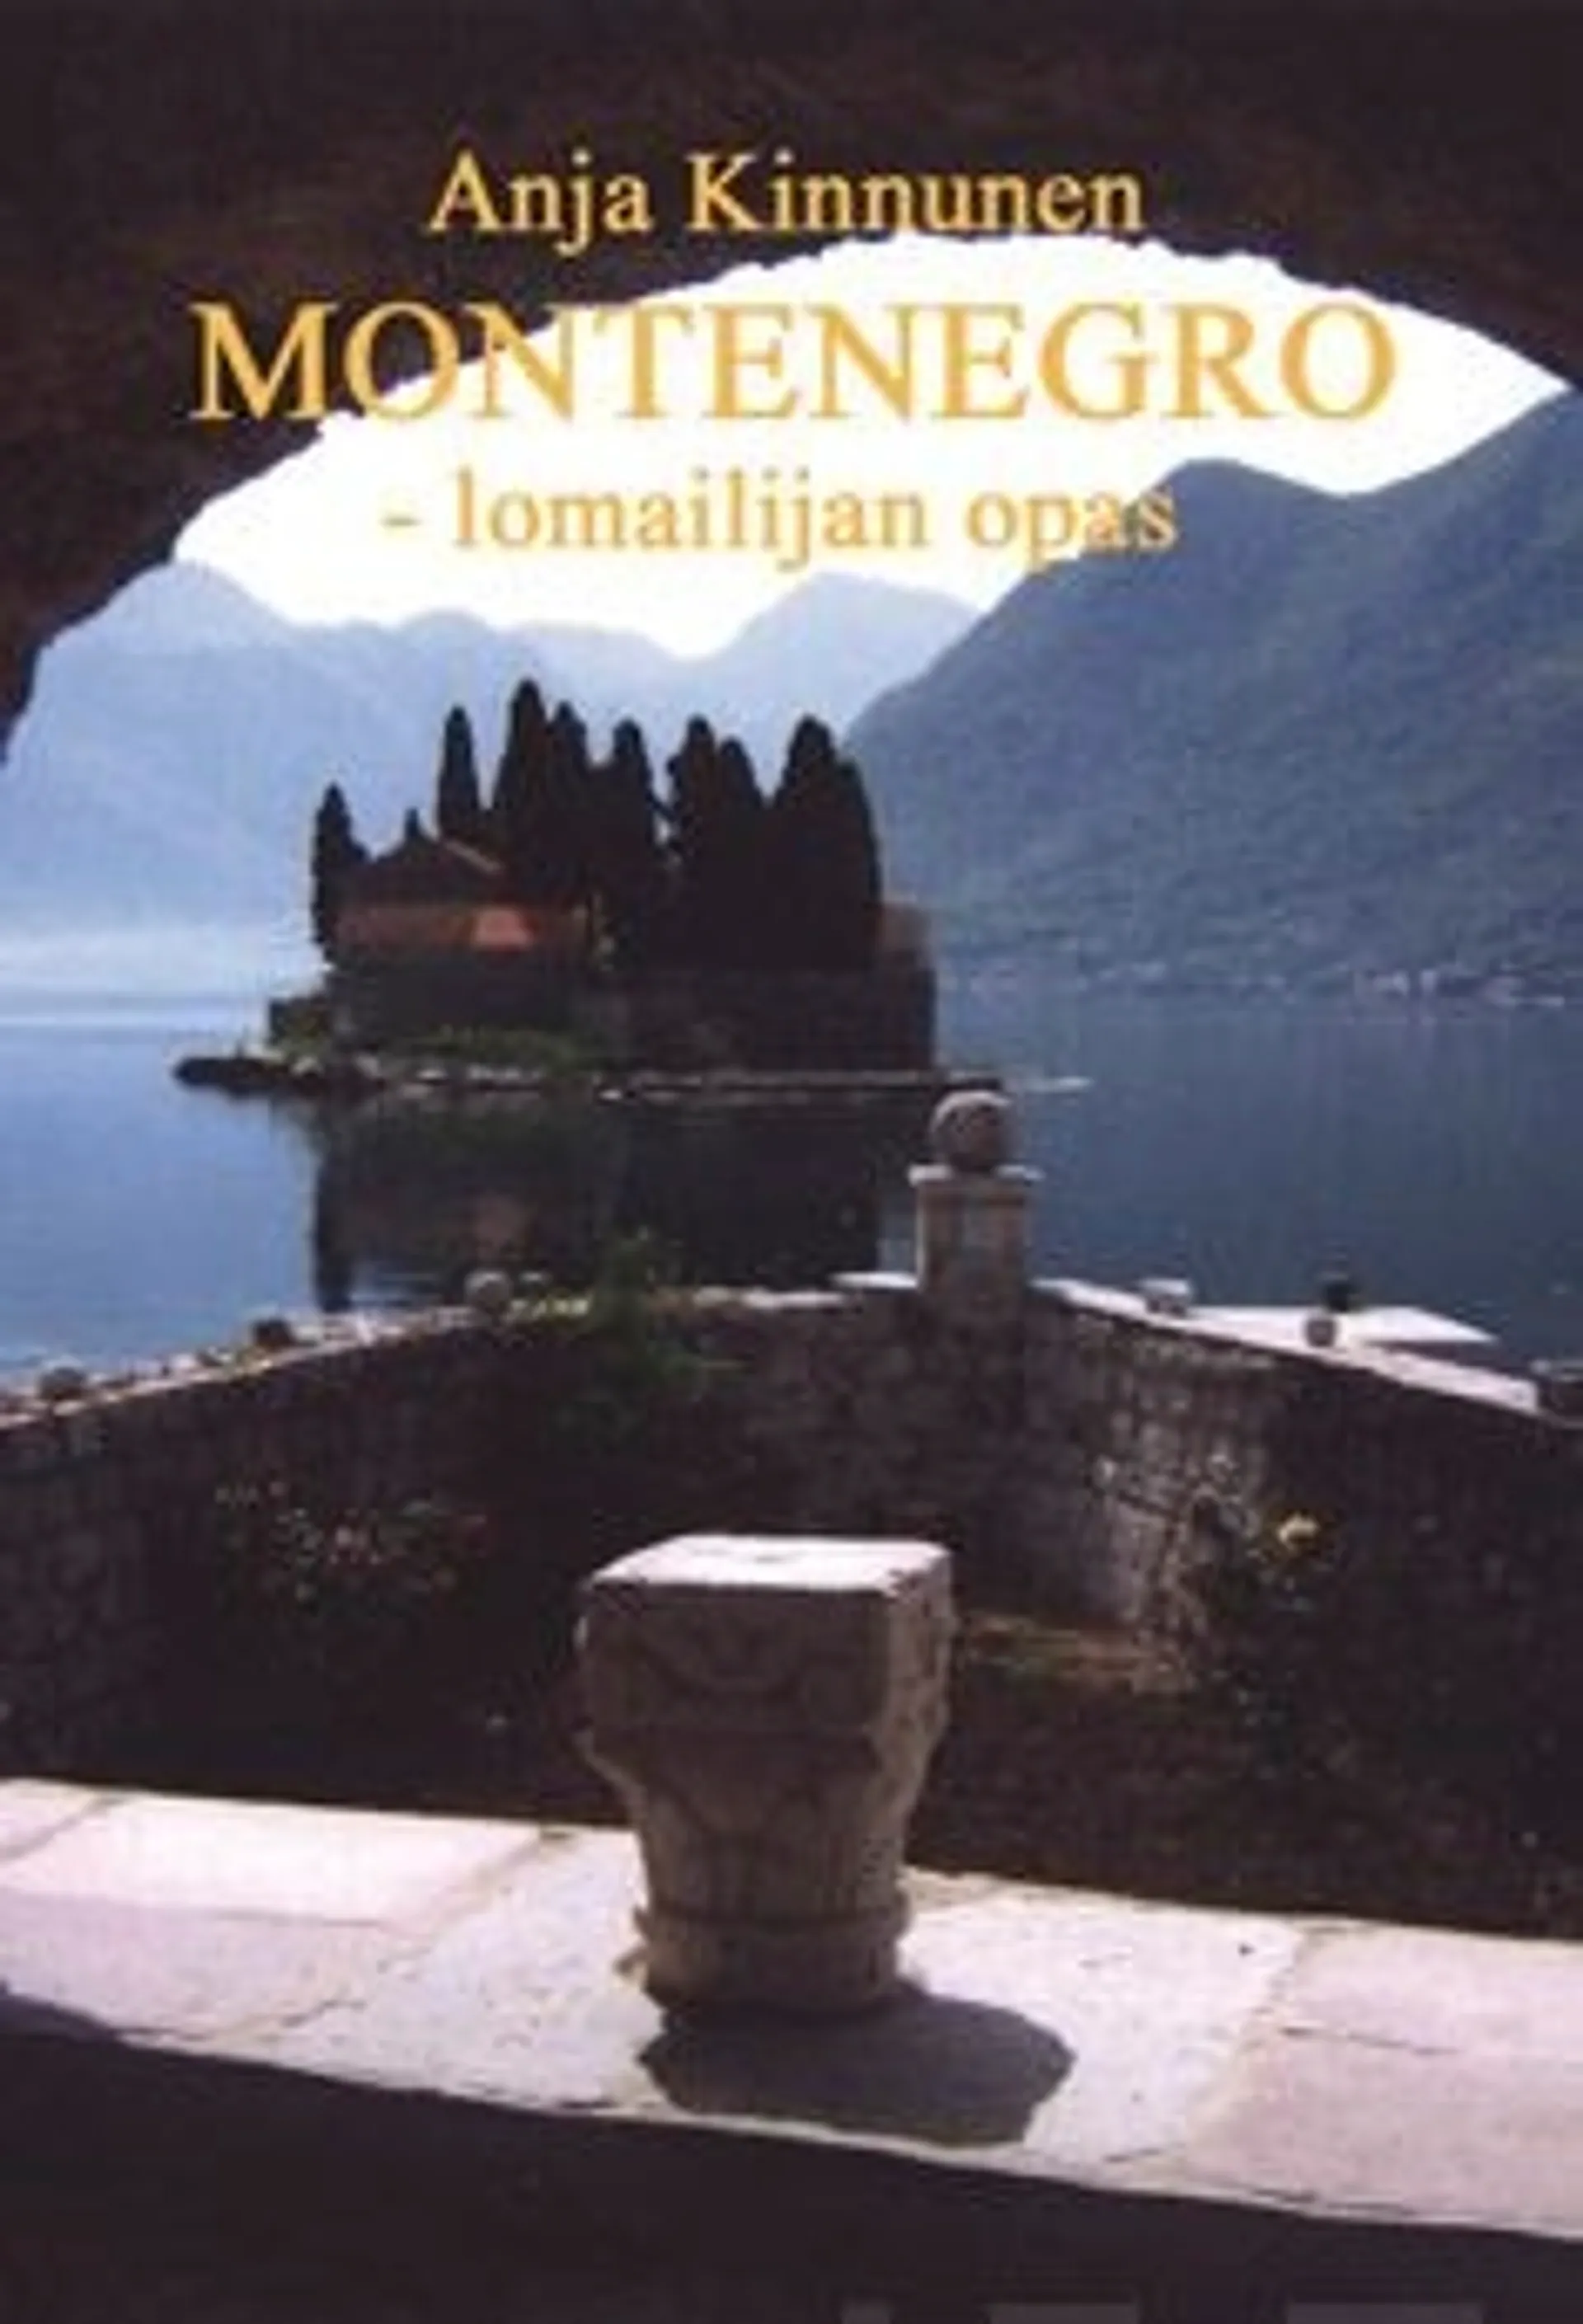 Kinnunen, Montenegro - lomailijan opas